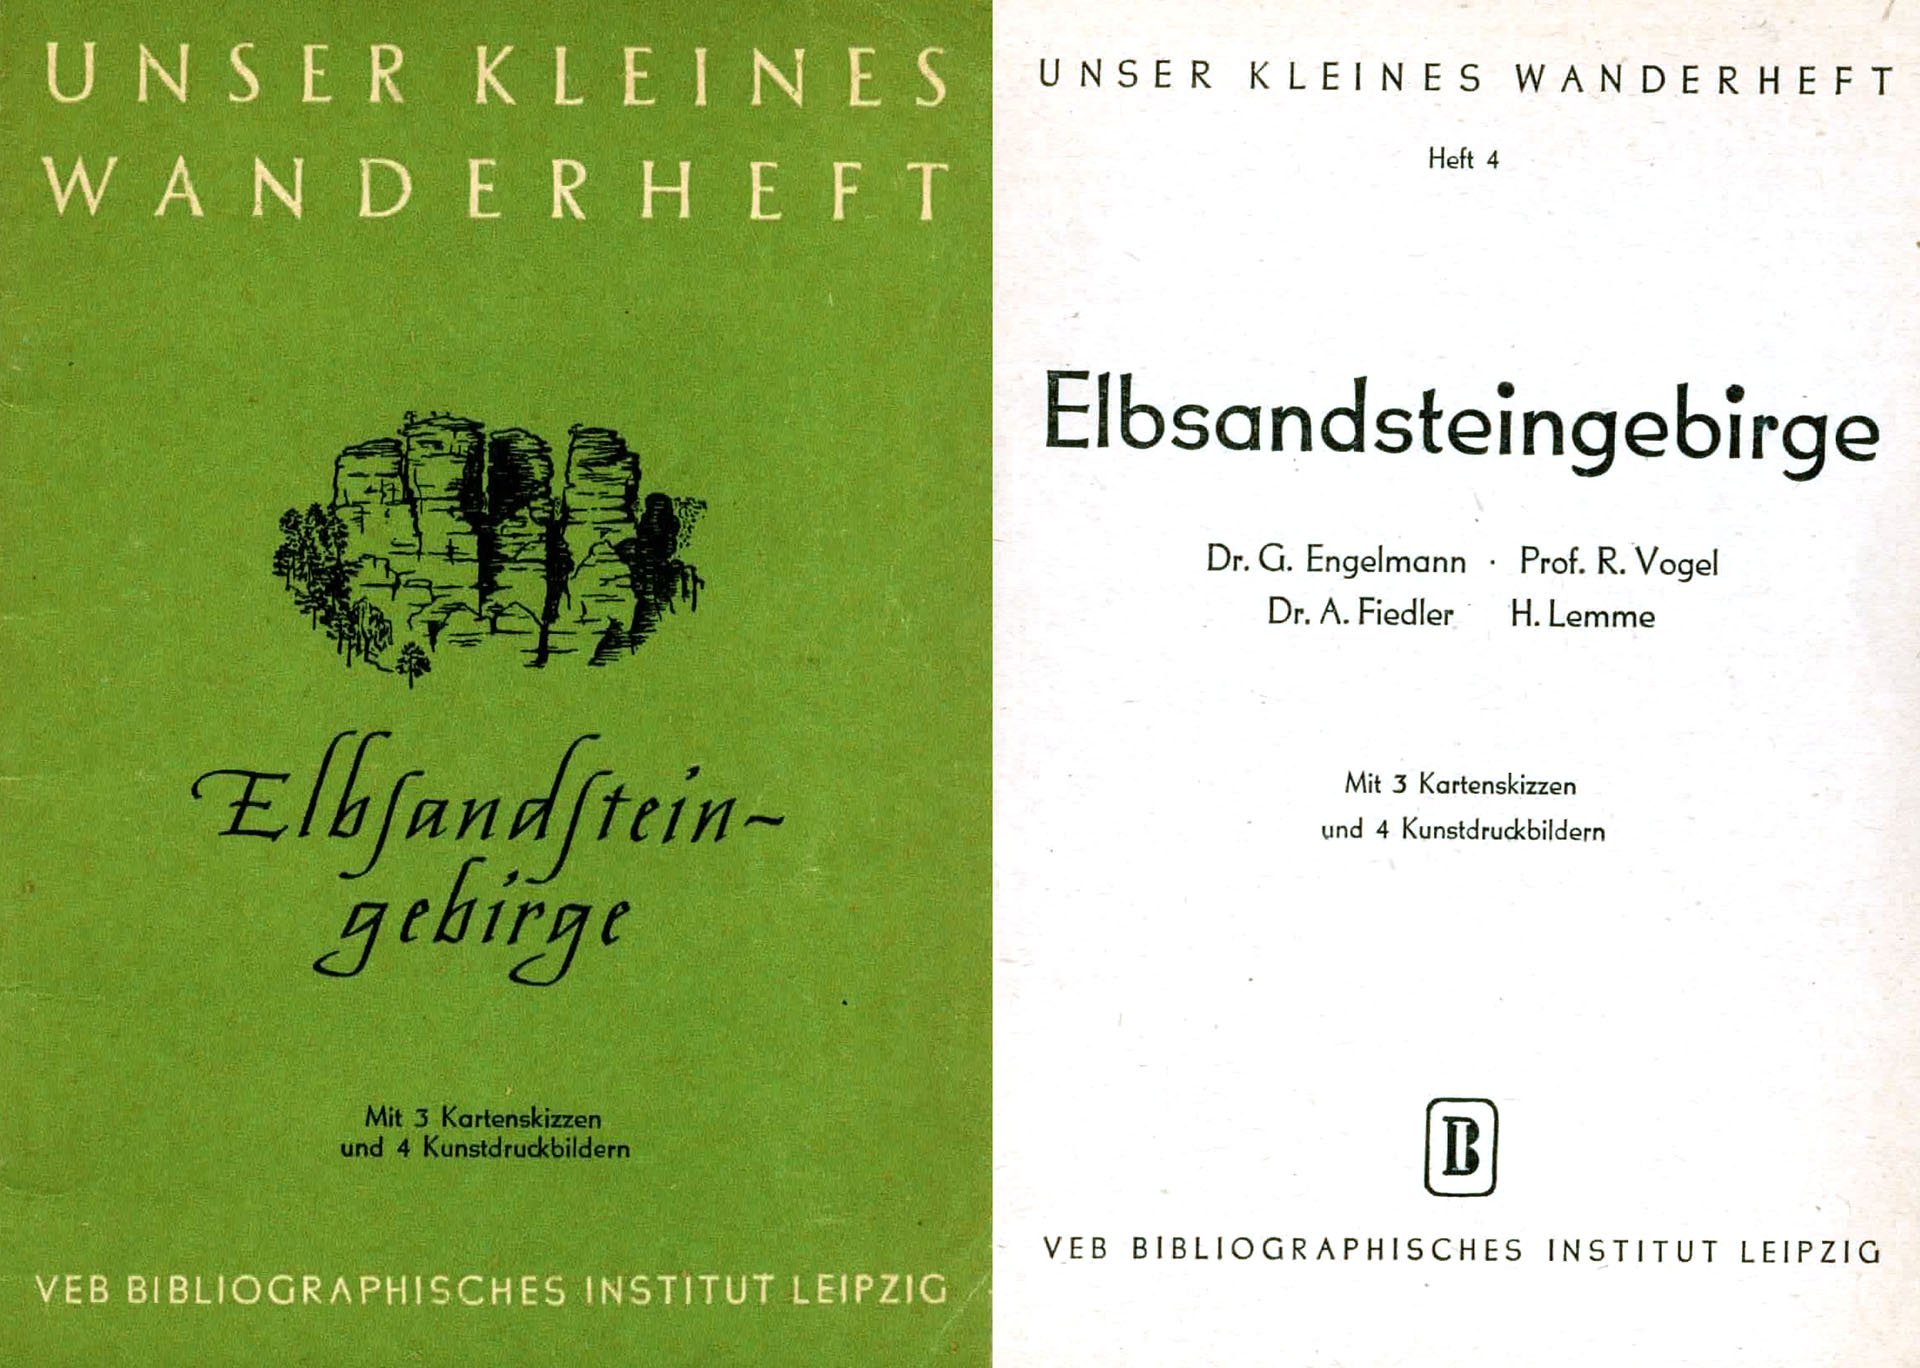 Elbsandsteingebirge - Engelmann, G. Dr. / Vogel, R. Prof. / Fiedler, A. Dr. / Lemme, H.